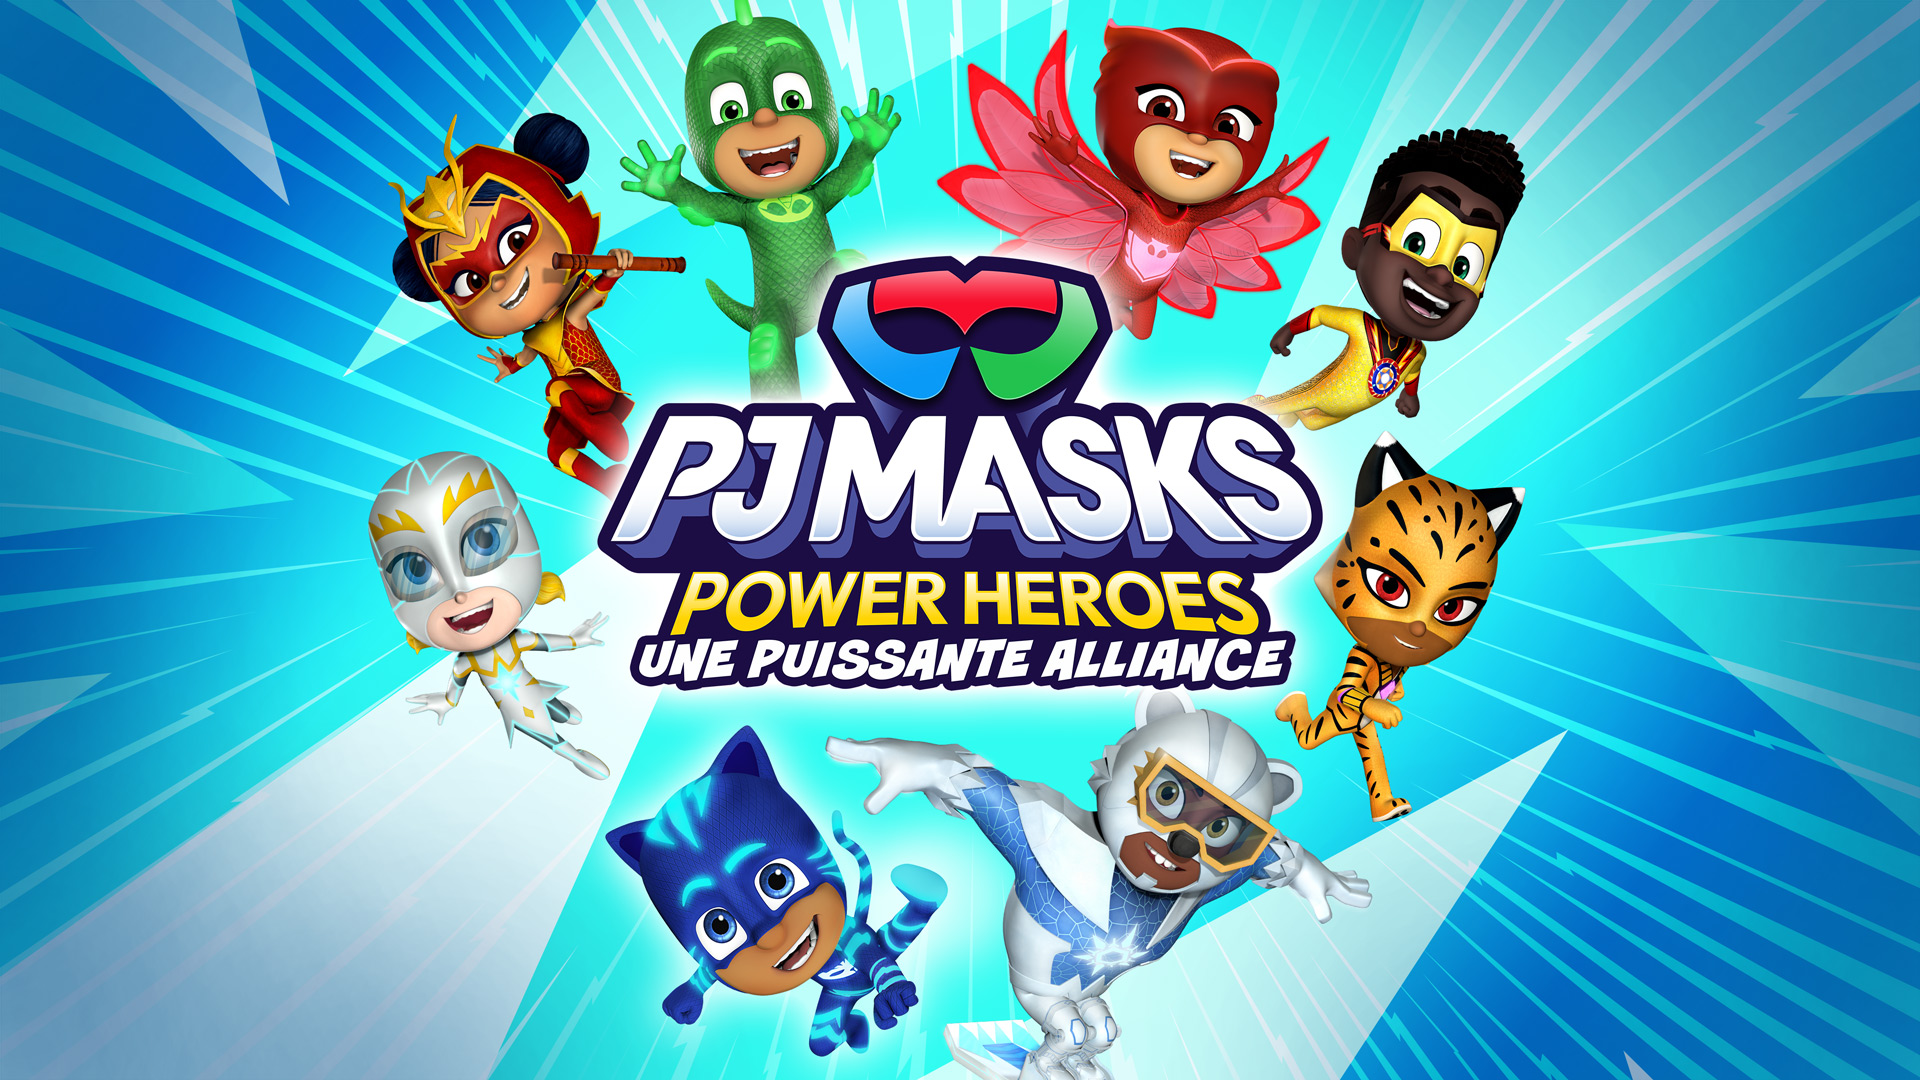 Les Pyjamasques reviennent sauver le monde dans PJ Masks Power Heroes